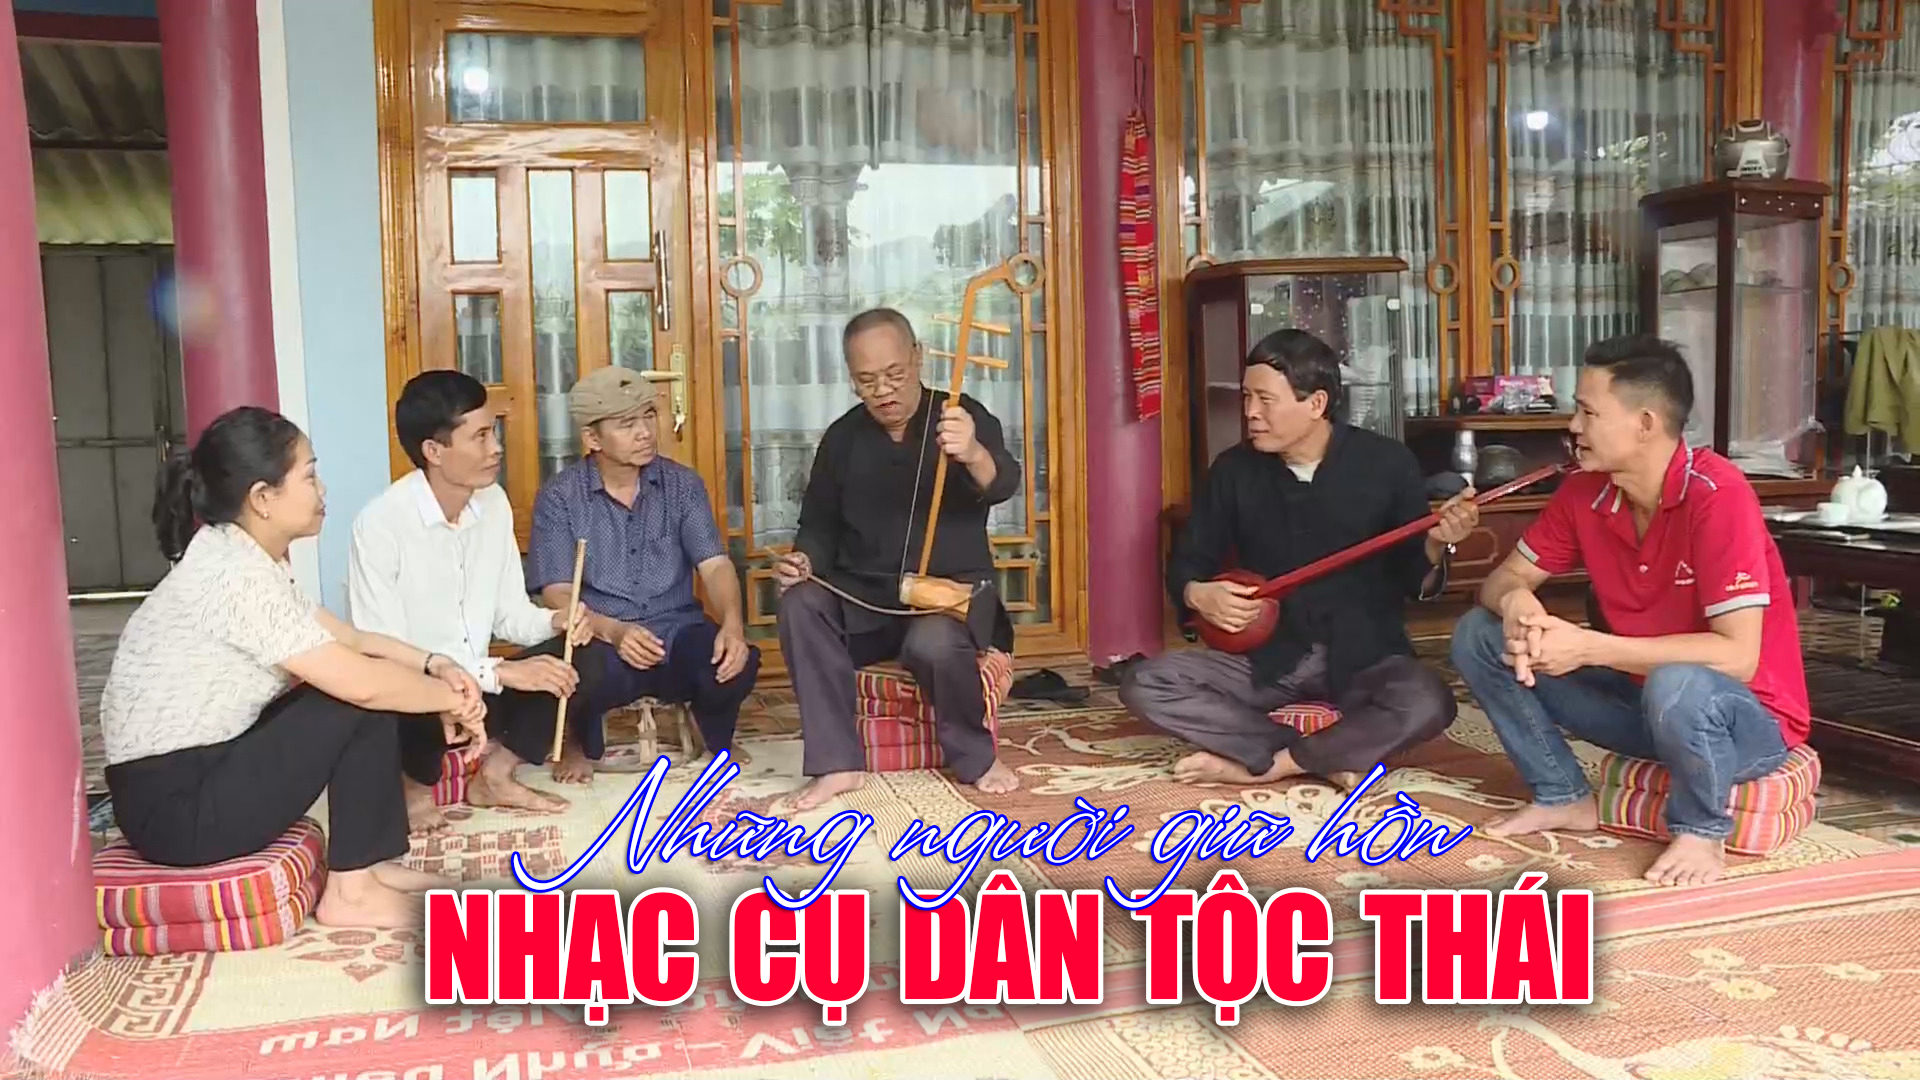 Những người giữ hồn nhạc cụ dân tộc Thái